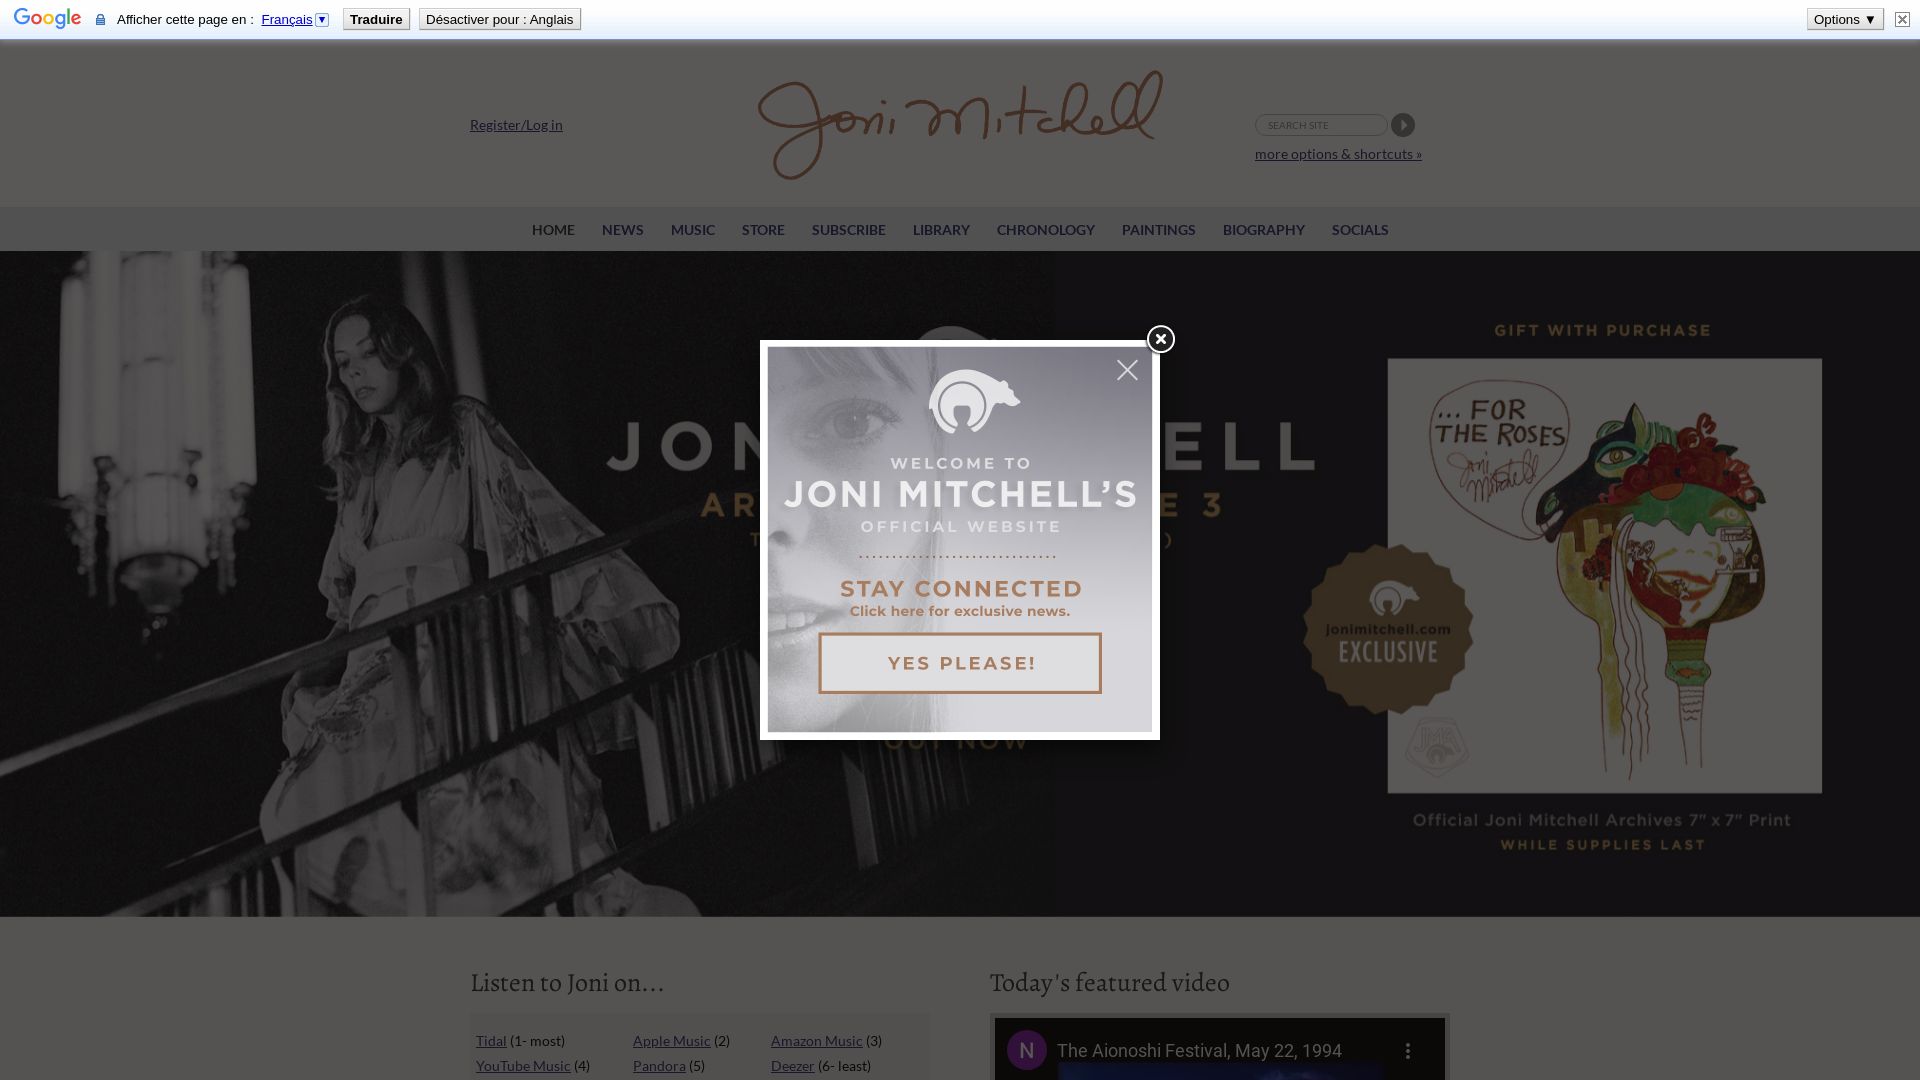 网站状态 jonimitchell.com 是  在线的